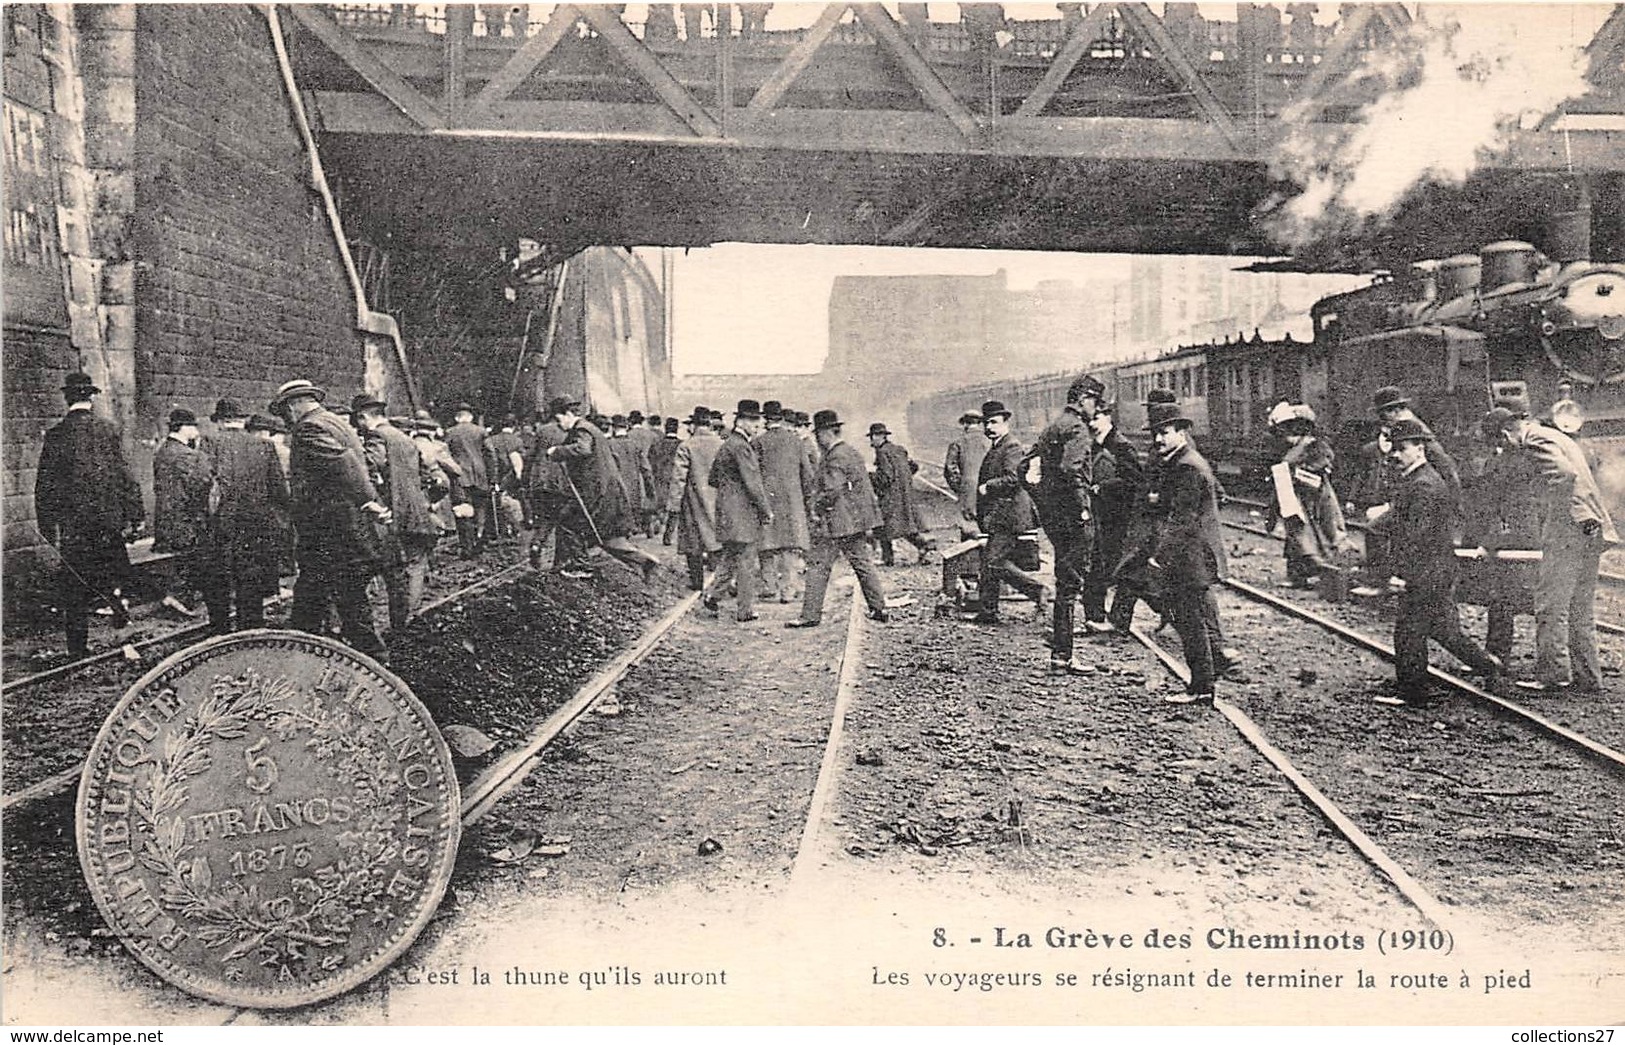 GREVE DES CHEMINOTS DU NORD 1910, LES VOYAGEURS SE RESIGNANT DE TERMINER LA ROUTE A PIED - Pariser Métro, Bahnhöfe